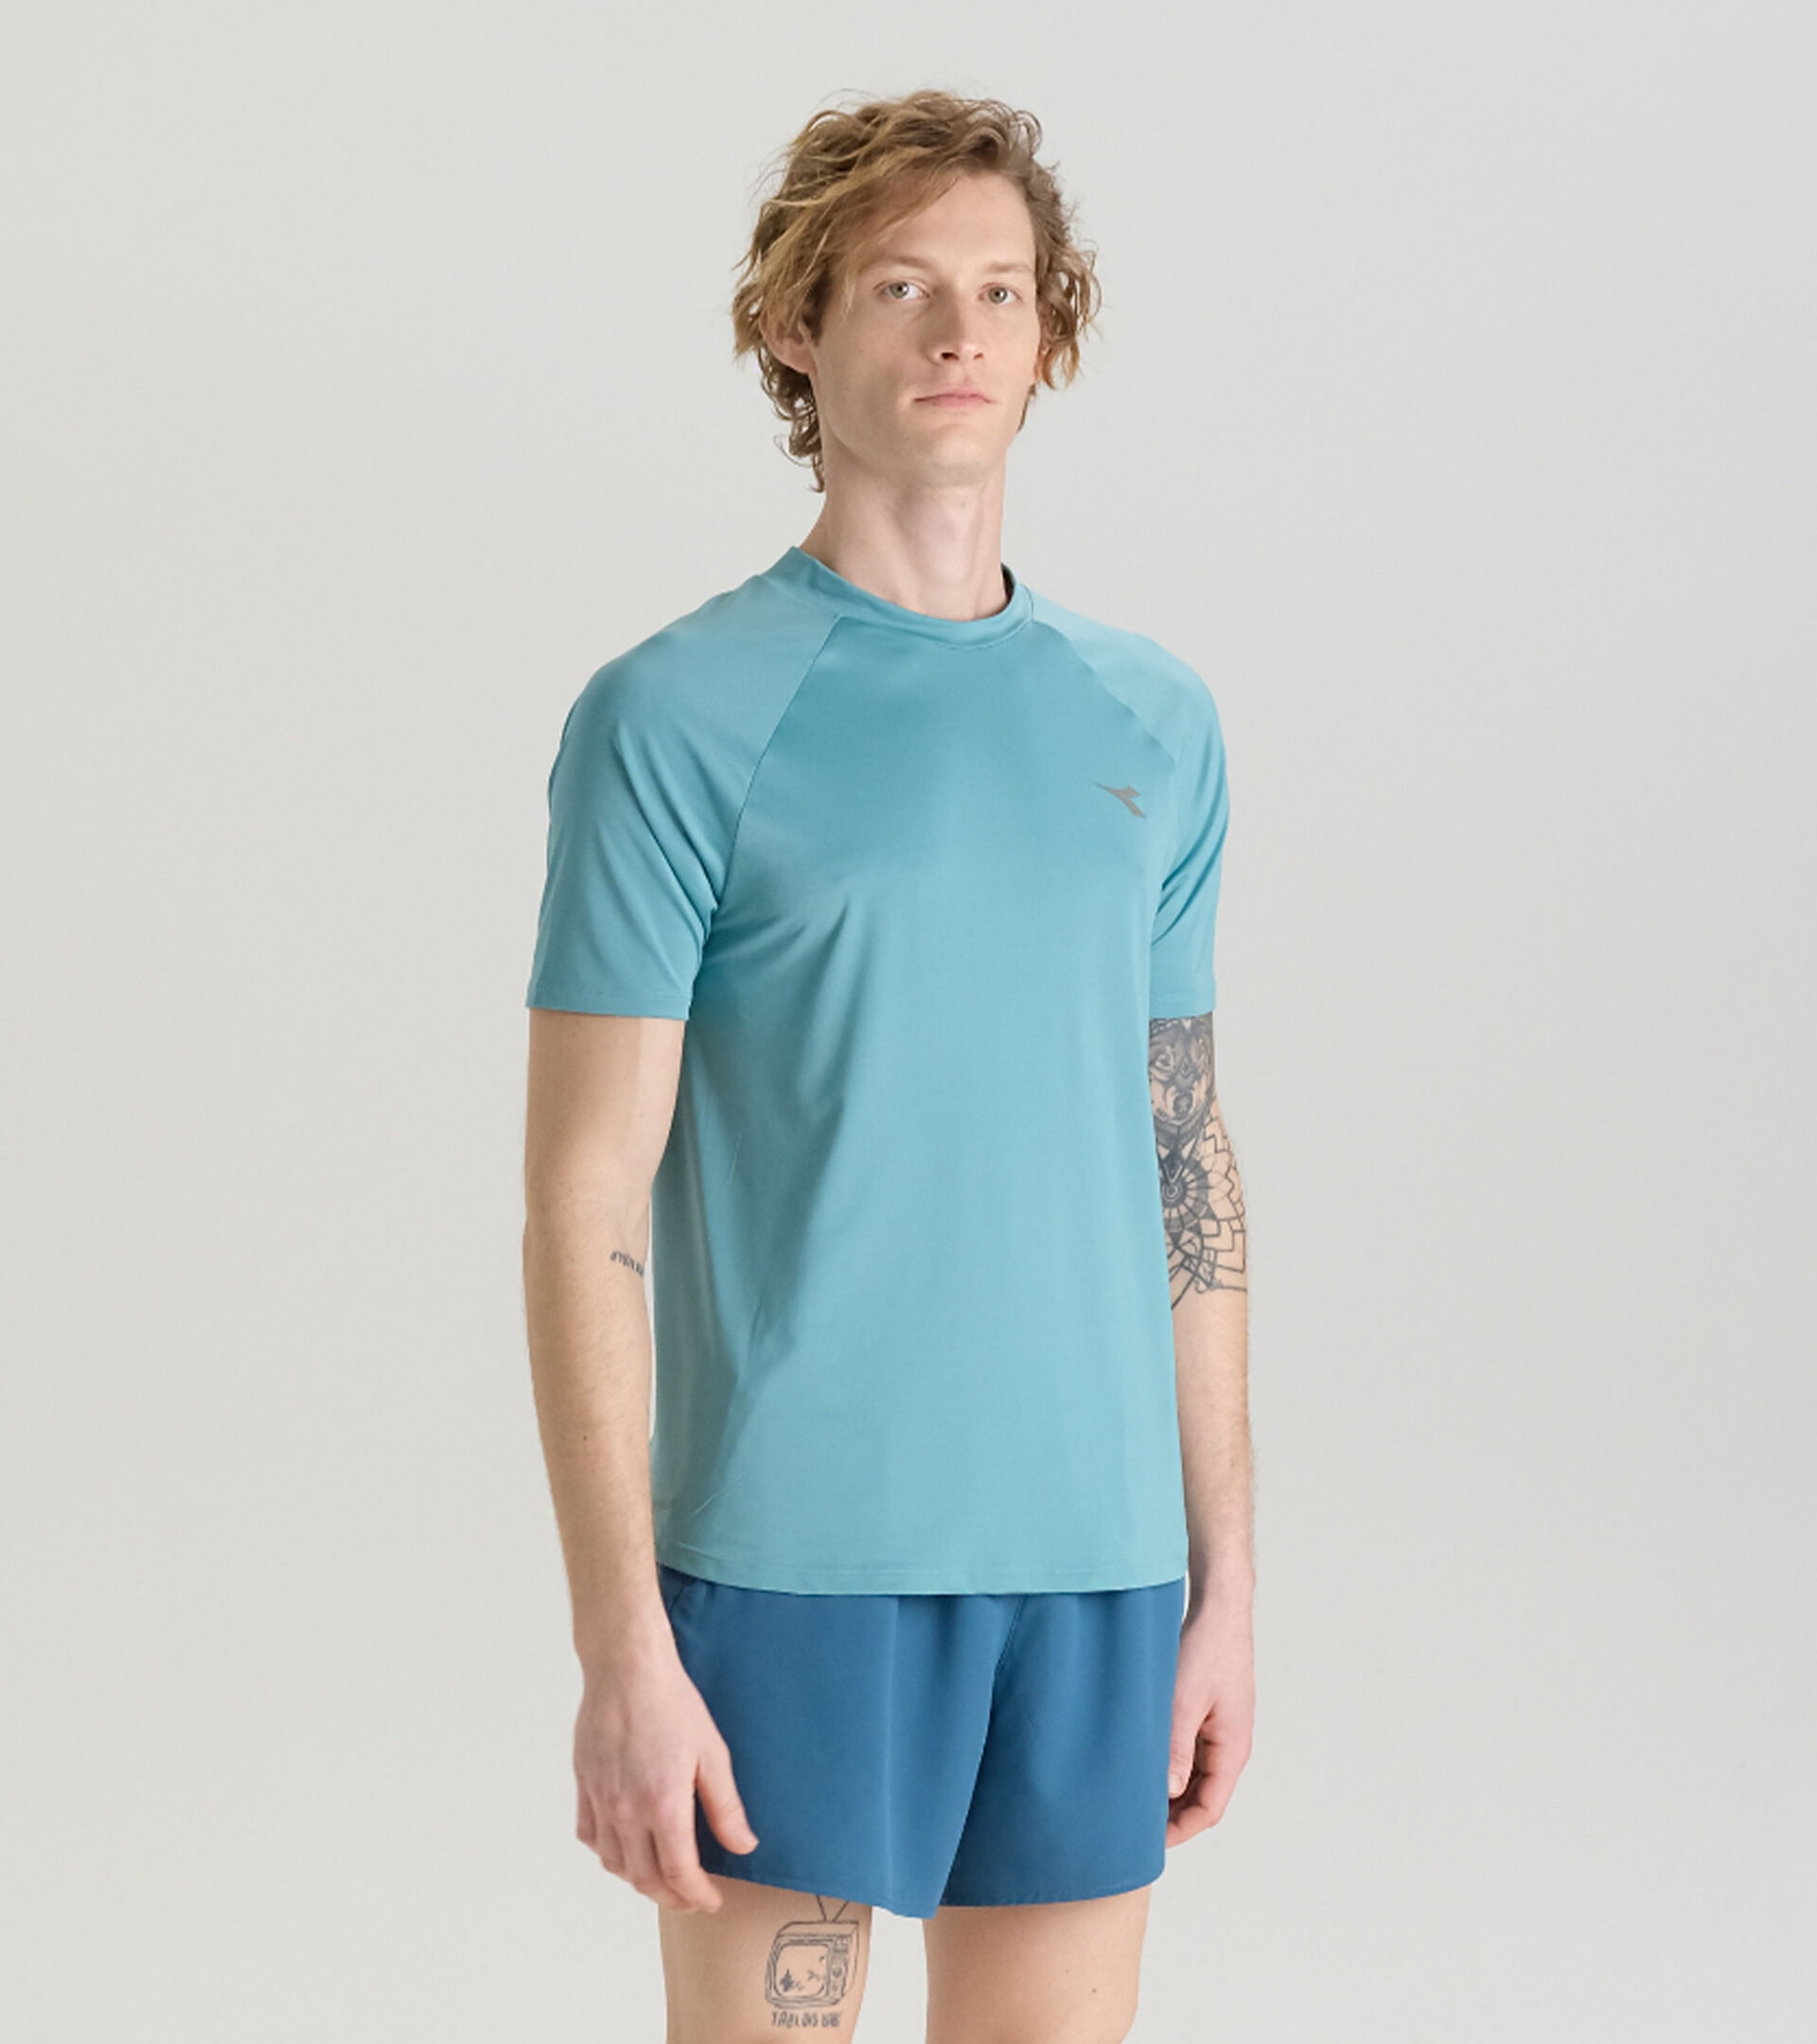 Running t-shirt - Light fabric - Men’s
 SUPER LIGHT SS T-SHIRT DUSTY TURQUOISE - Diadora